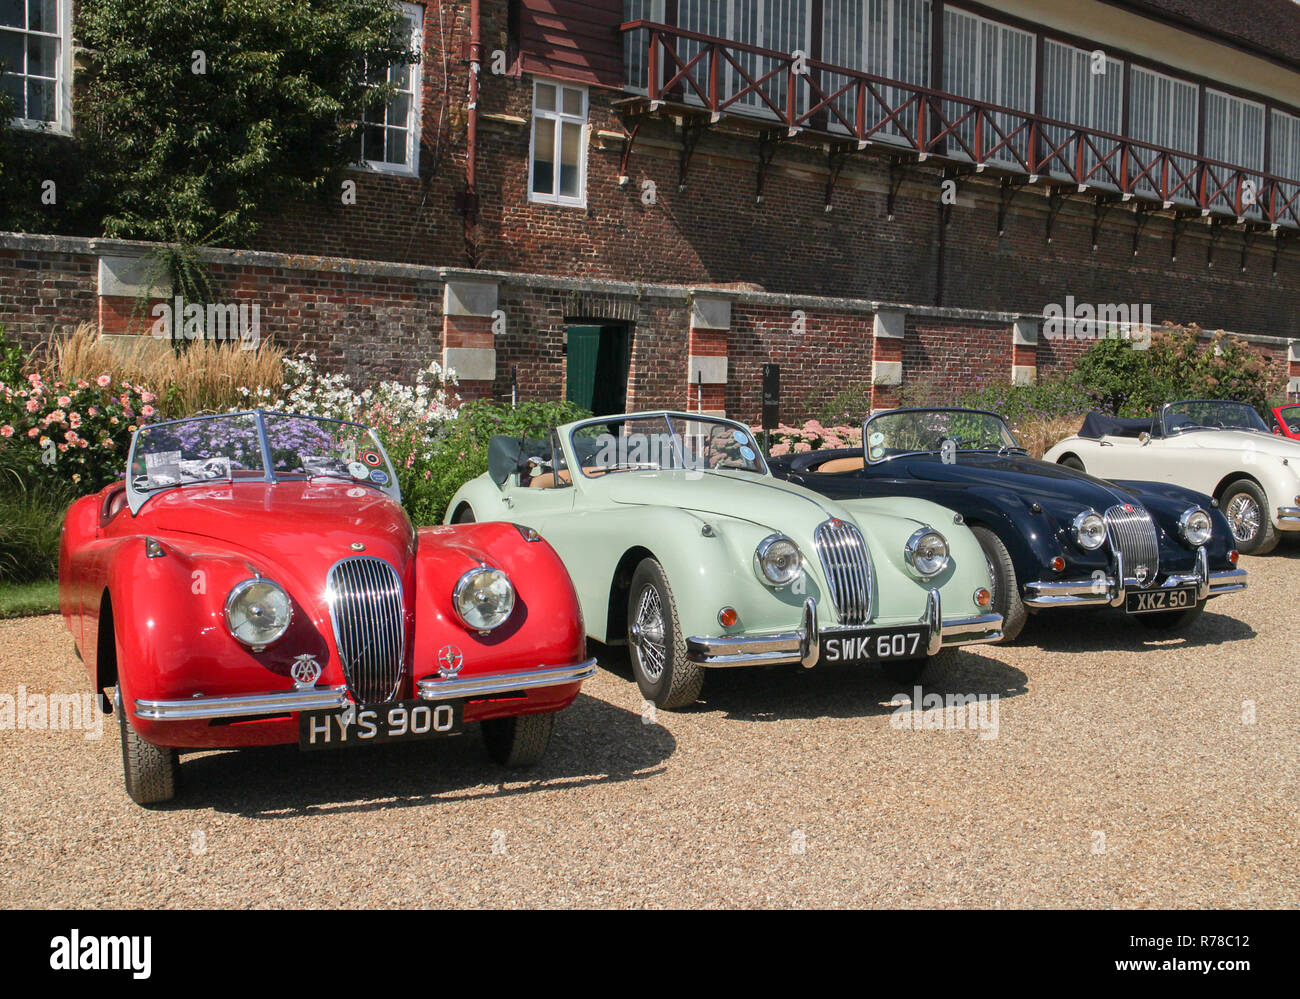 Jaguar XK trois (de gauche 120, 140, 150 ) entre les voitures du club au Concours d'élégance 2018, Hampton Court Palace, East Molesey, Surrey Banque D'Images